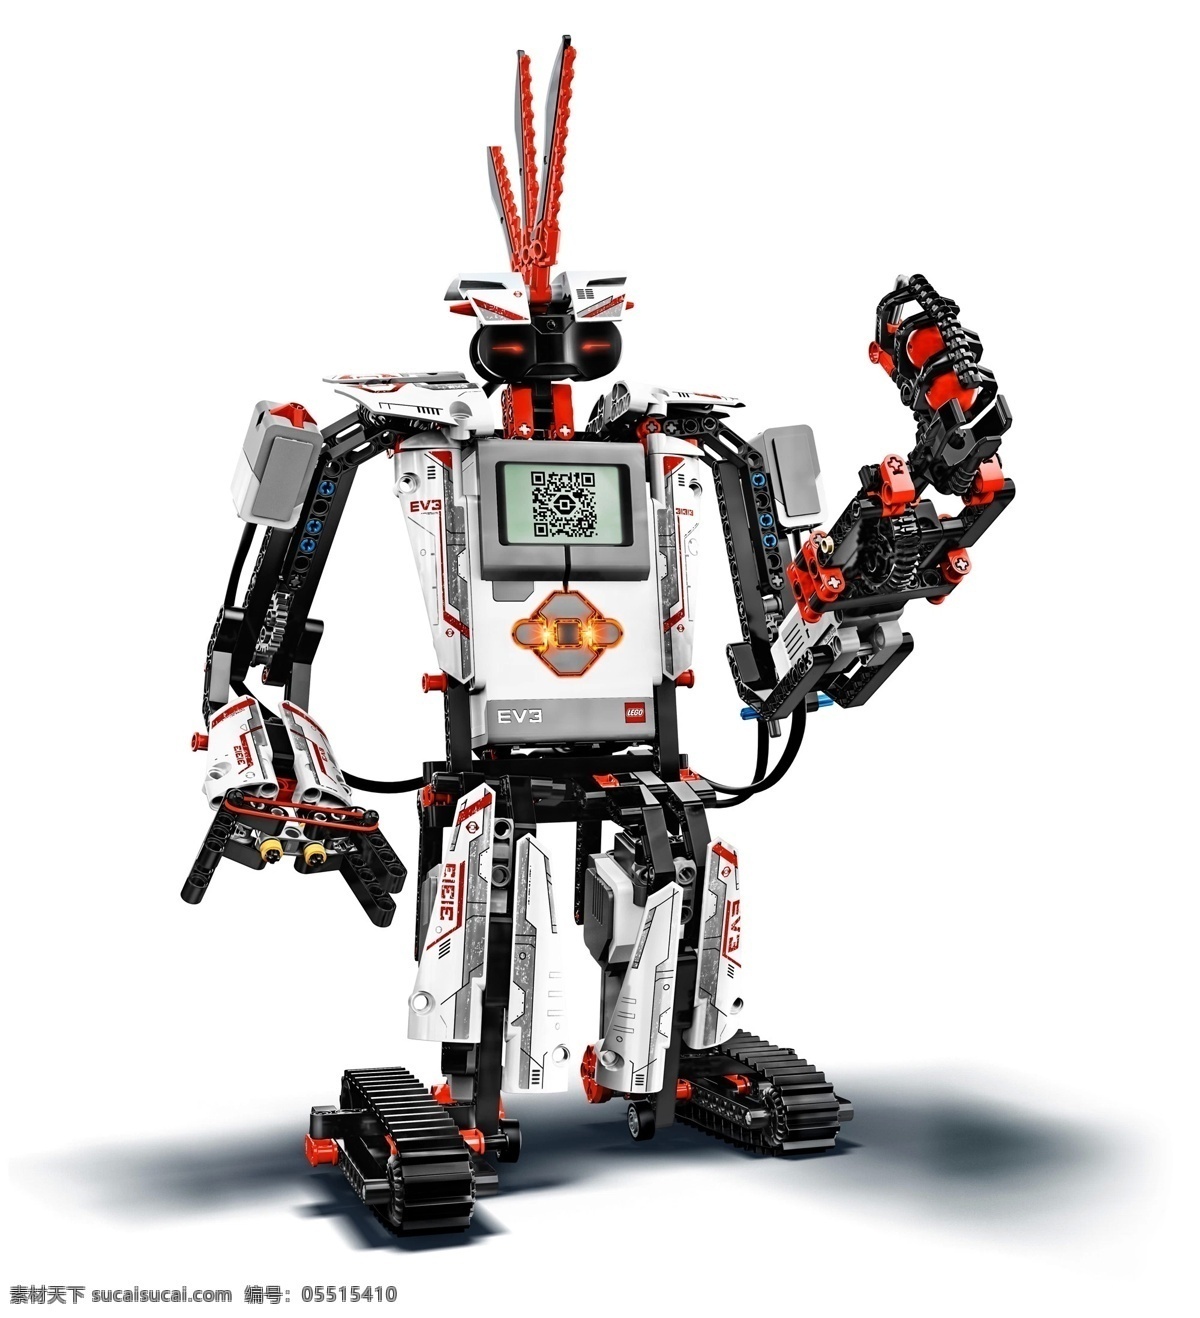 乐高机器人 乐高 ev3 机器人 教育 拼插 现代科技 科学研究